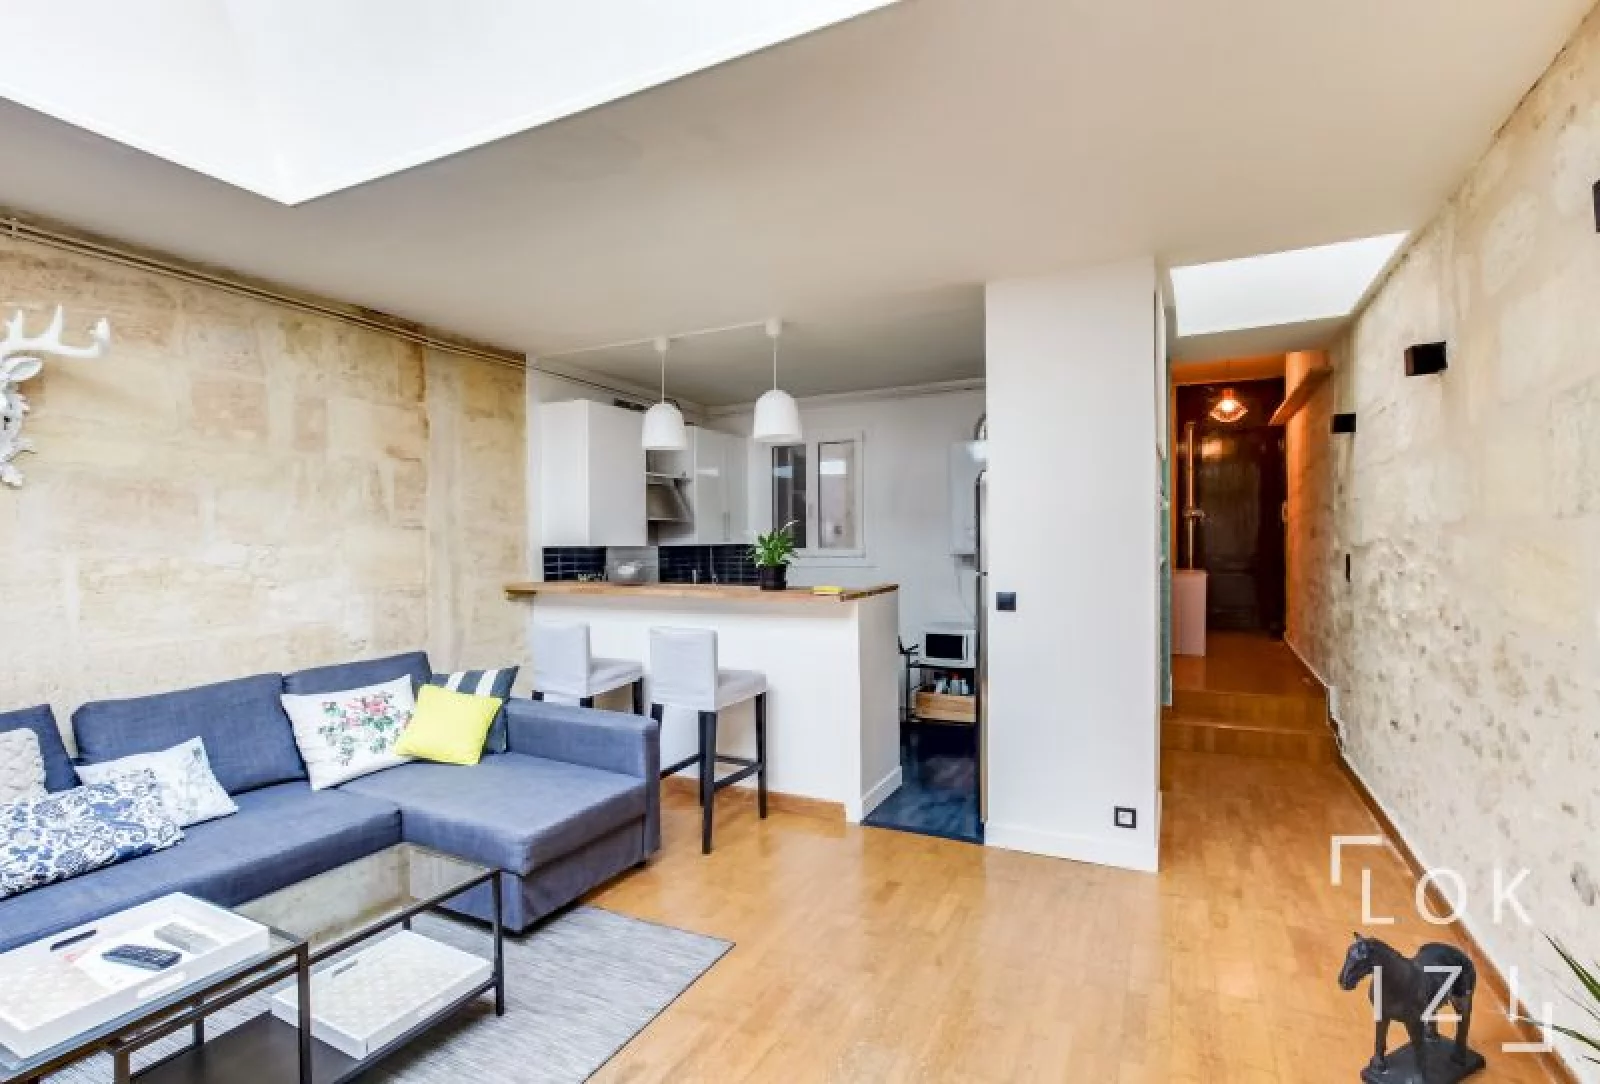 Location appartement meublé 2 pièces 50m² (Bordeaux centre)